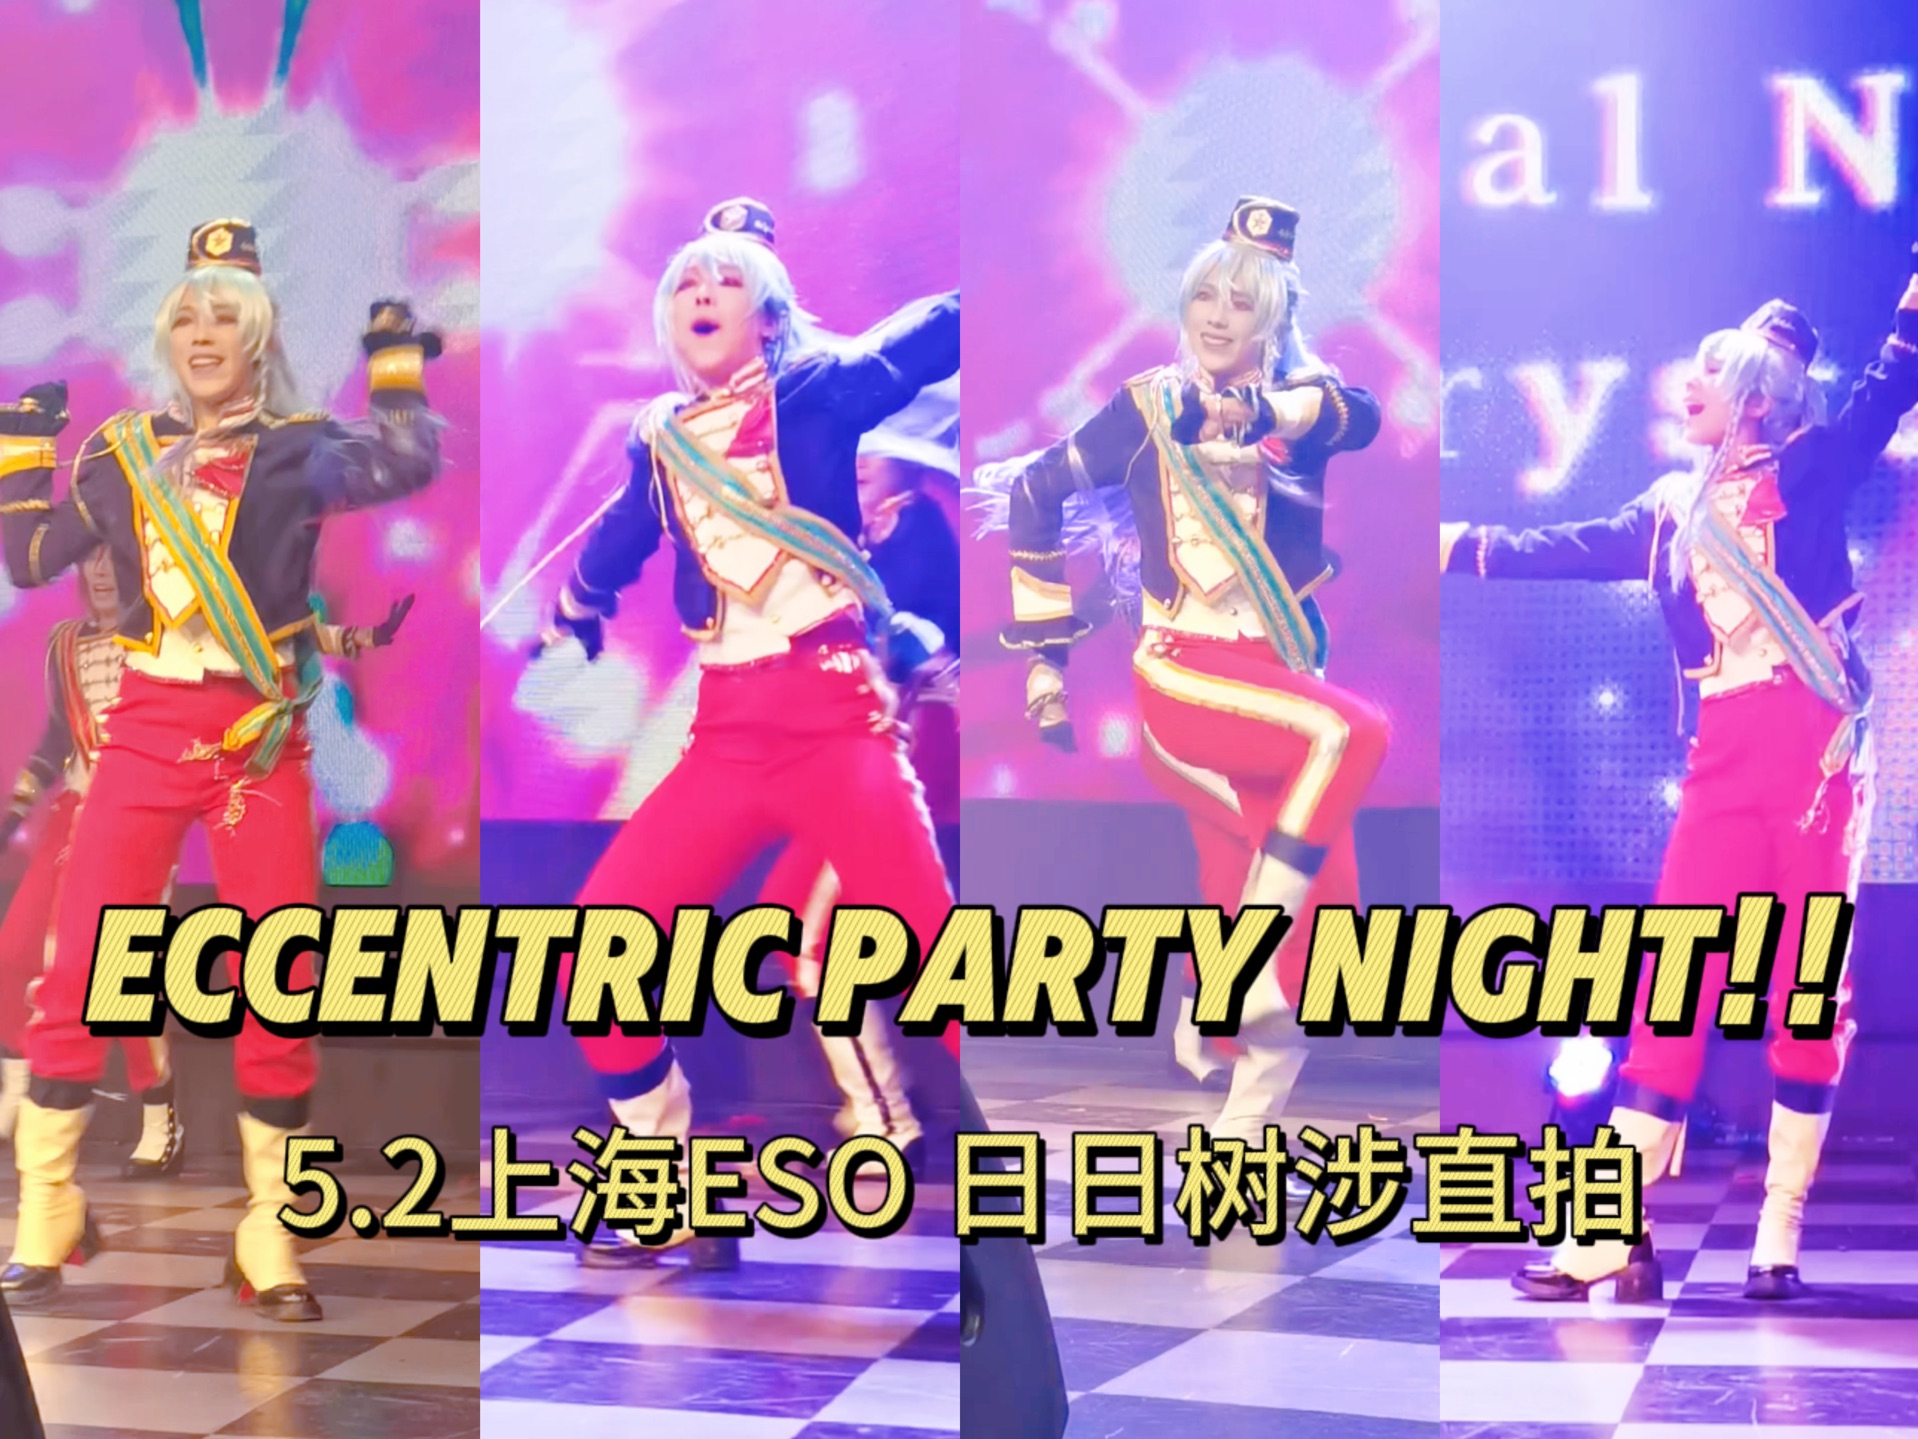 5.2上海ESO | Eccentric Party Night !!奇人盛宴之夜 五奇人-日日树涉直拍